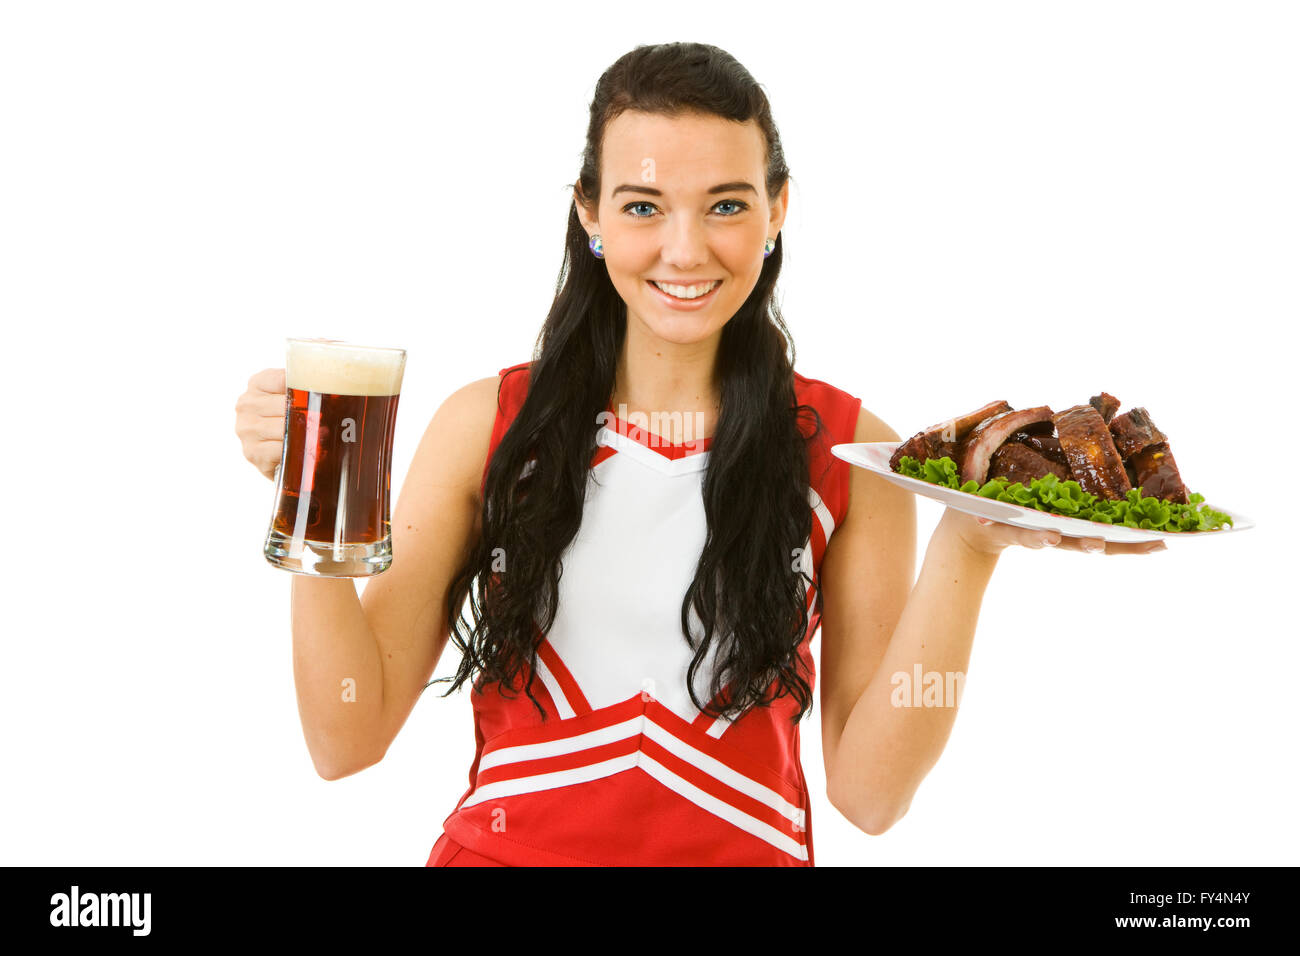 Süße Frau wie eine amerikanische Sportarten Cheerleader in roten und weißen Outfit.  Isoliert auf weißem Hintergrund. Stockfoto